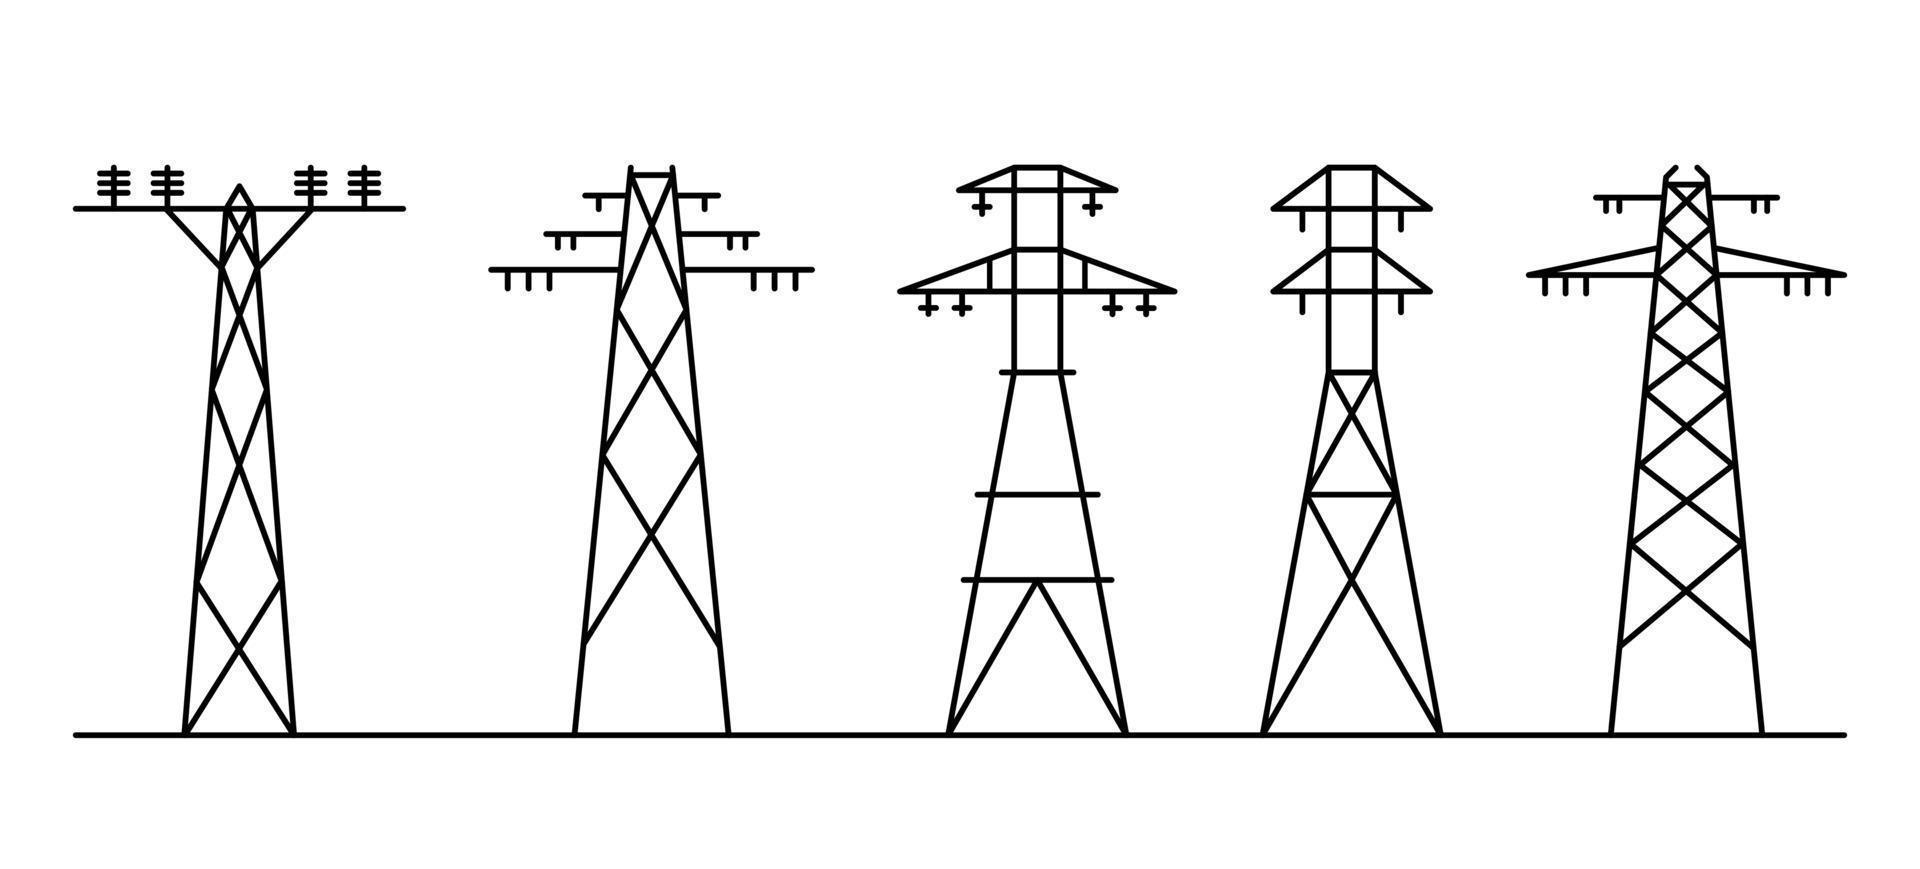 arte de la línea de alimentación. diferentes postes de electricidad. vector